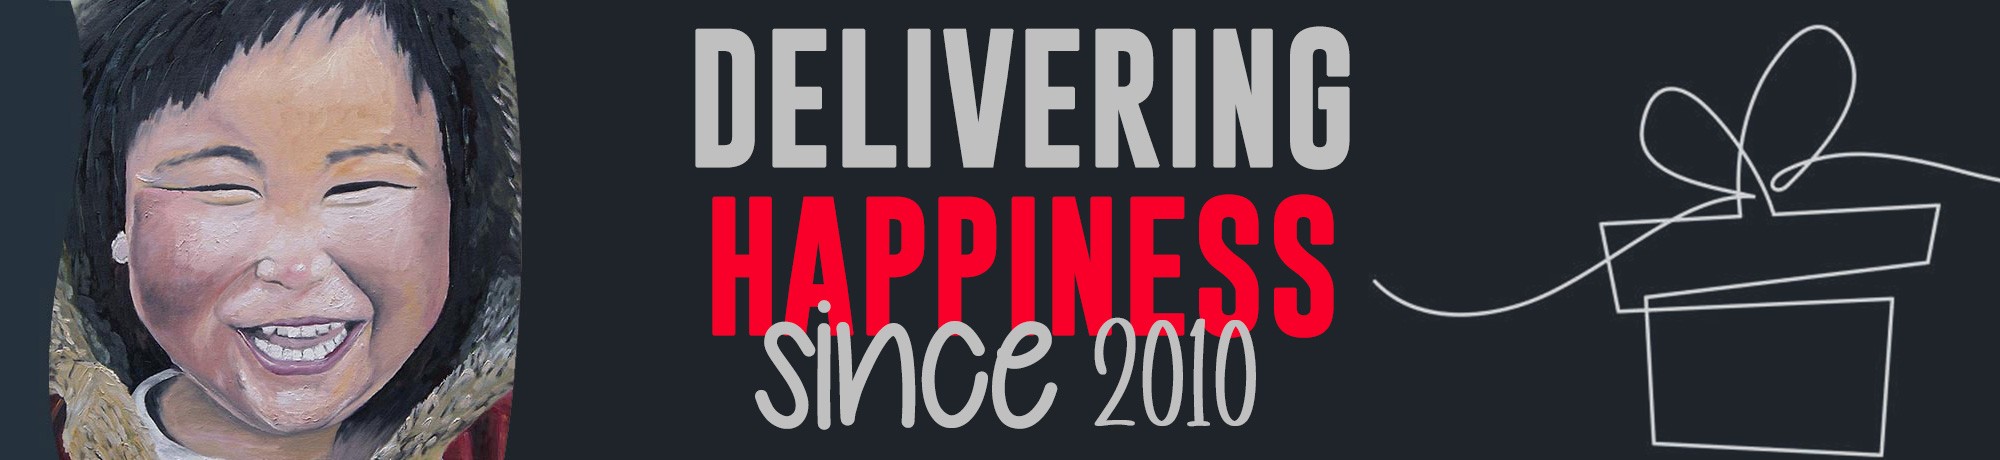 Delivering-Happiness-Since-2010-%28-gift-emoji%29-Banner_2.jpg